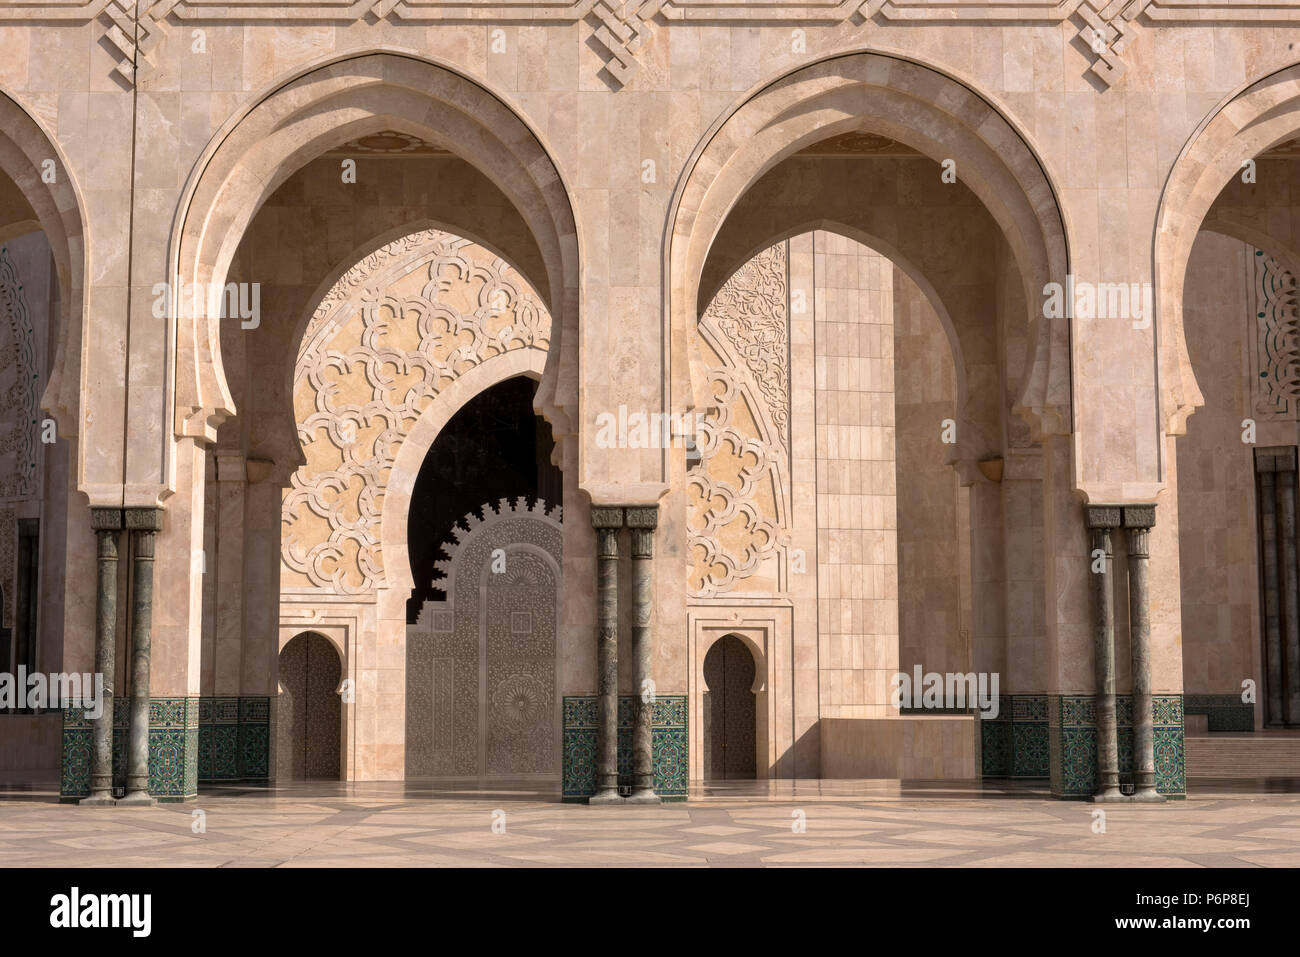 Colonnade en marbre Ã l'entrÃ©e de la MosquÃ©e Hassan II. Casablanca, Maroc. Banque D'Images